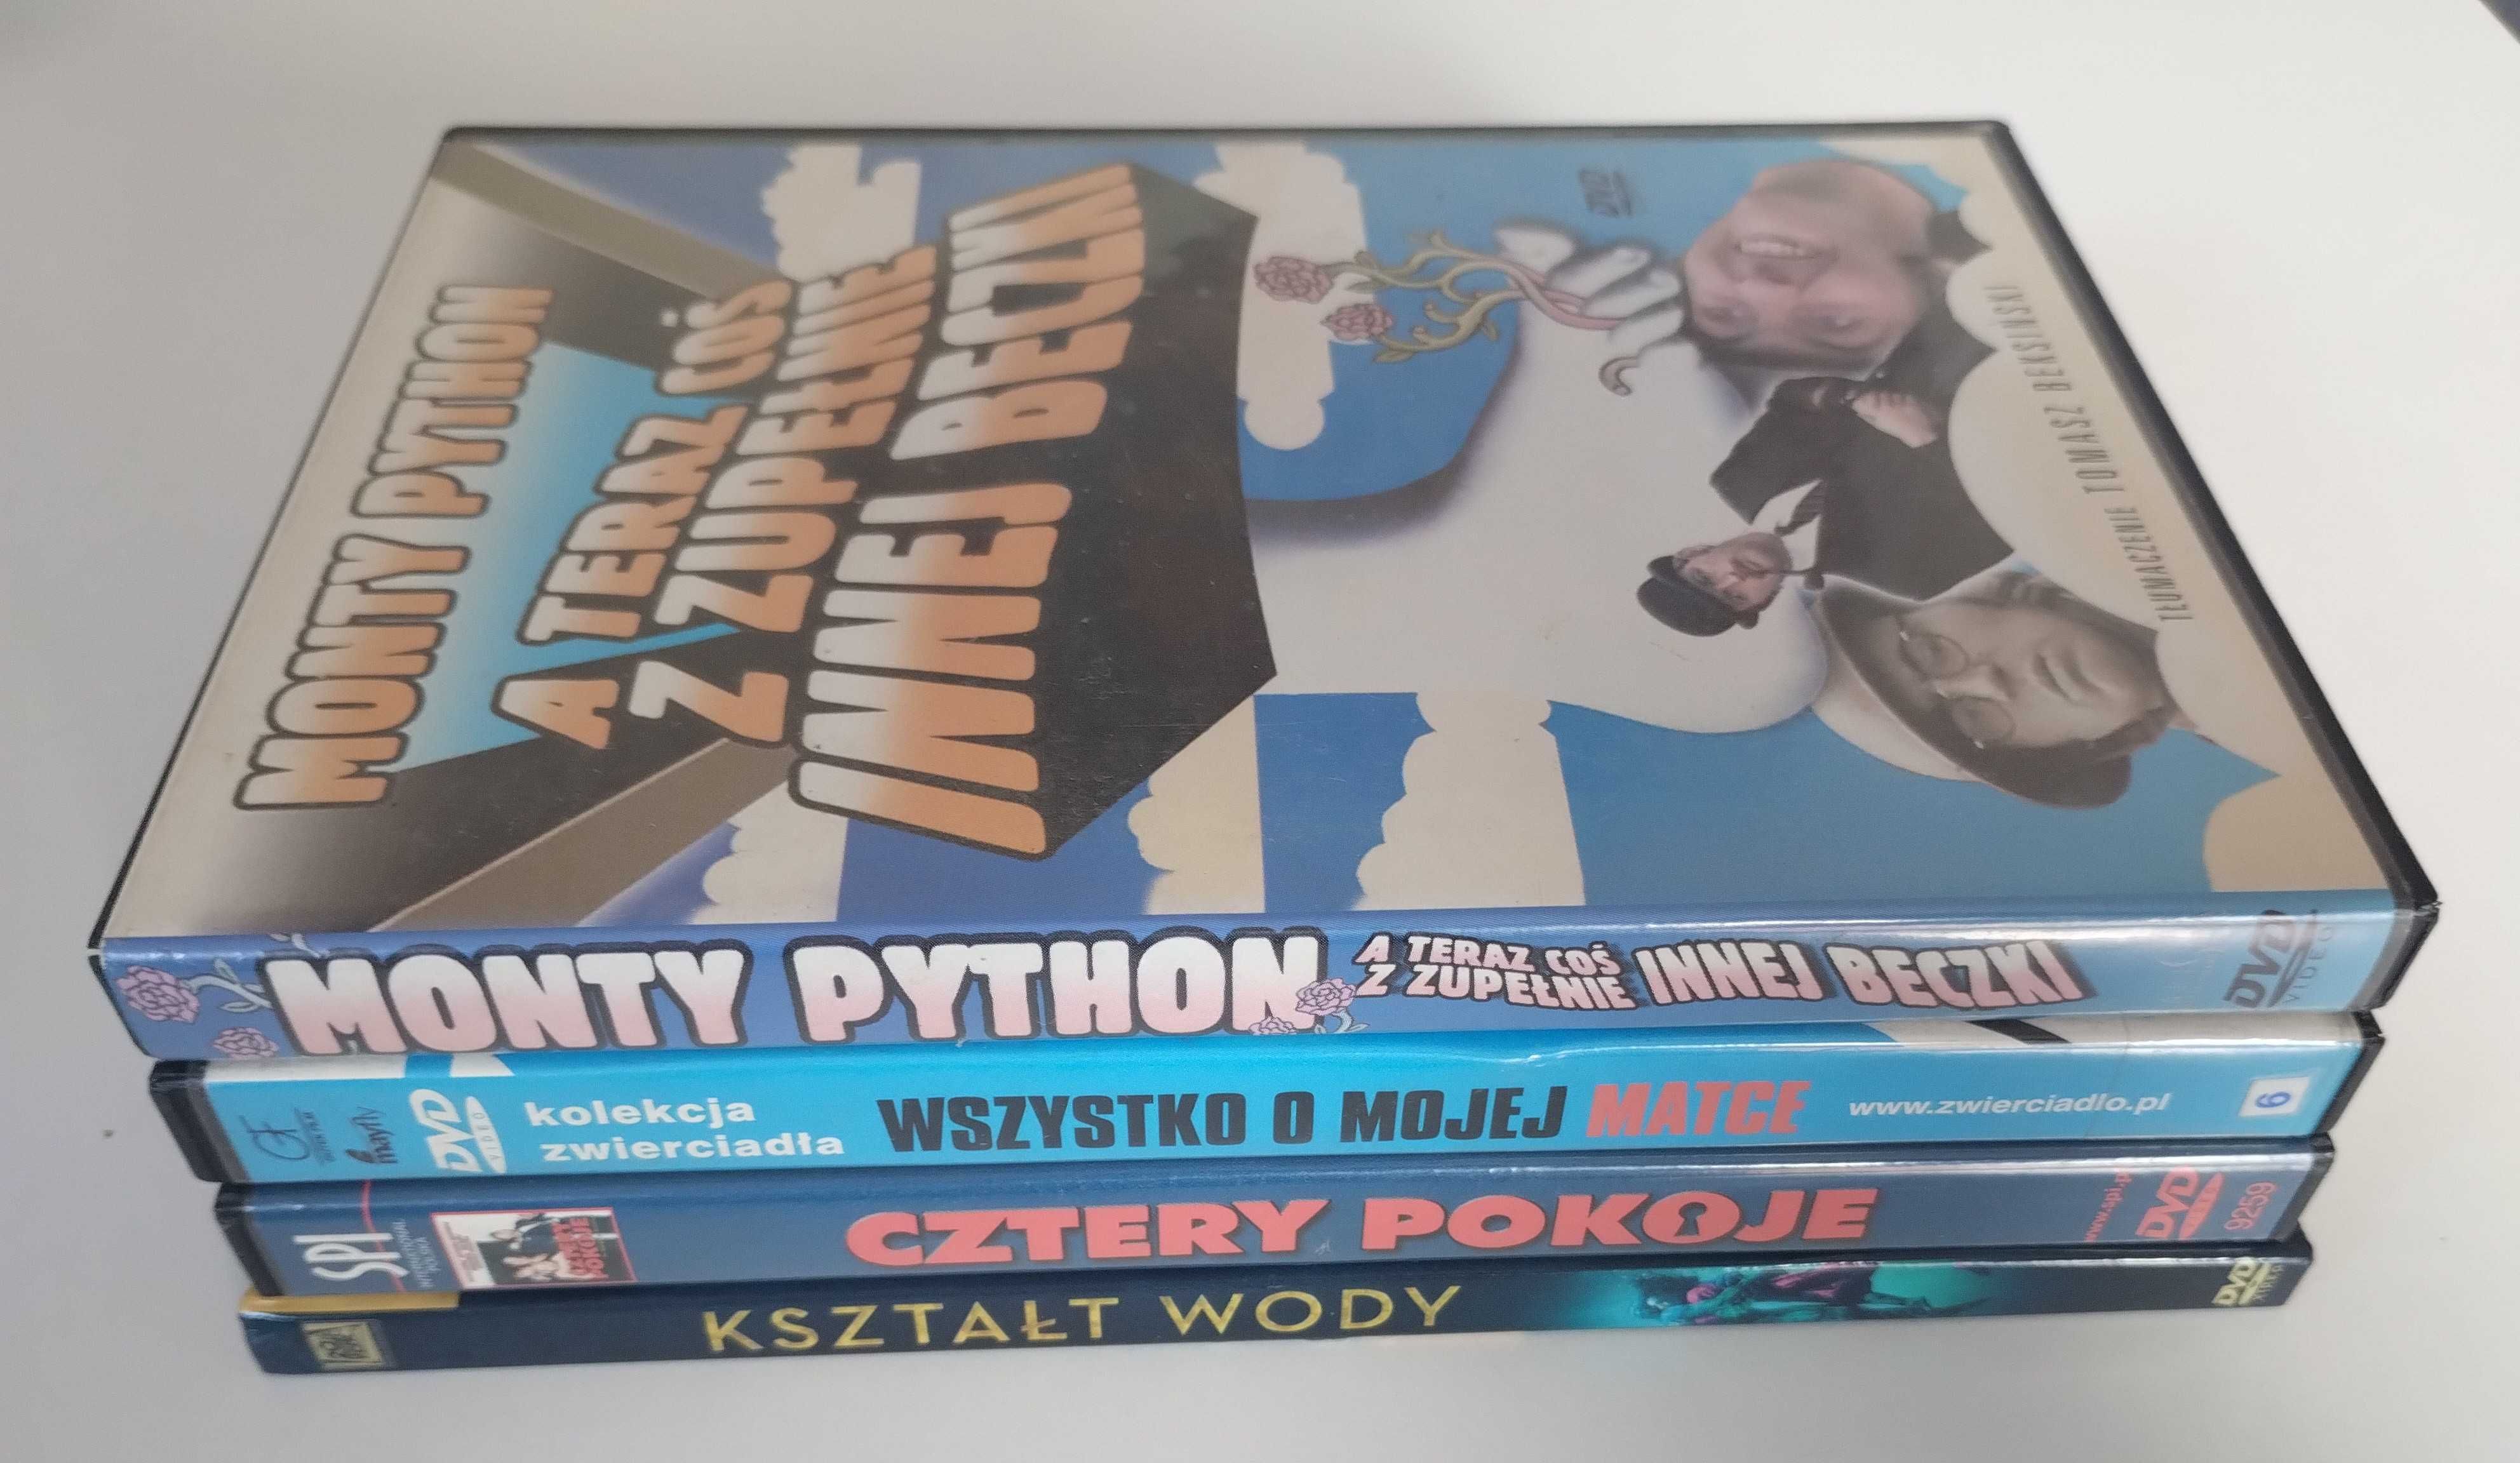 Monthy Python, Kształt Wody, Cztery Pokoje - zestaw 4 filmów DVD